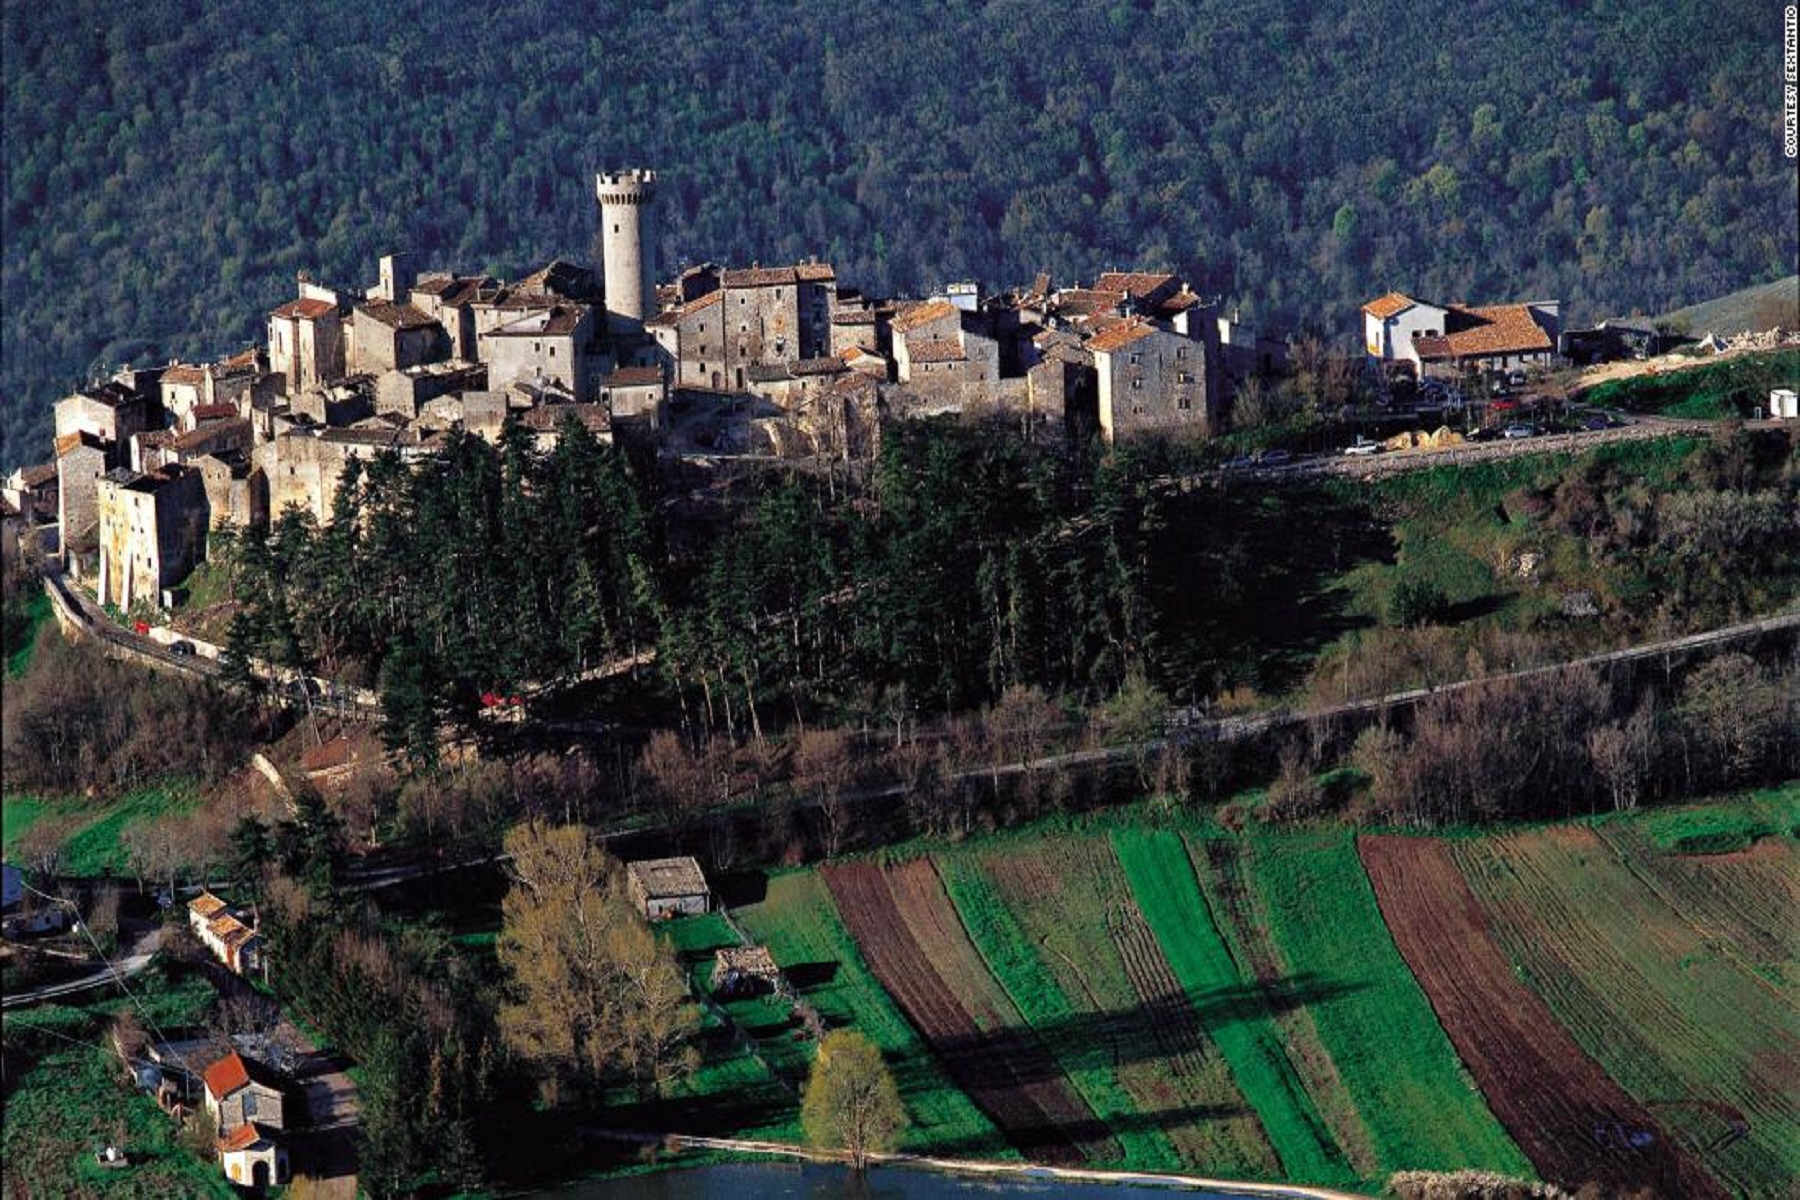 Ξενοδοχεία Ιταλία: Ιδανικό covid free κατάλυμα – Ιδιότυπο μοντέλο σε μεσαιωνικά χωριά